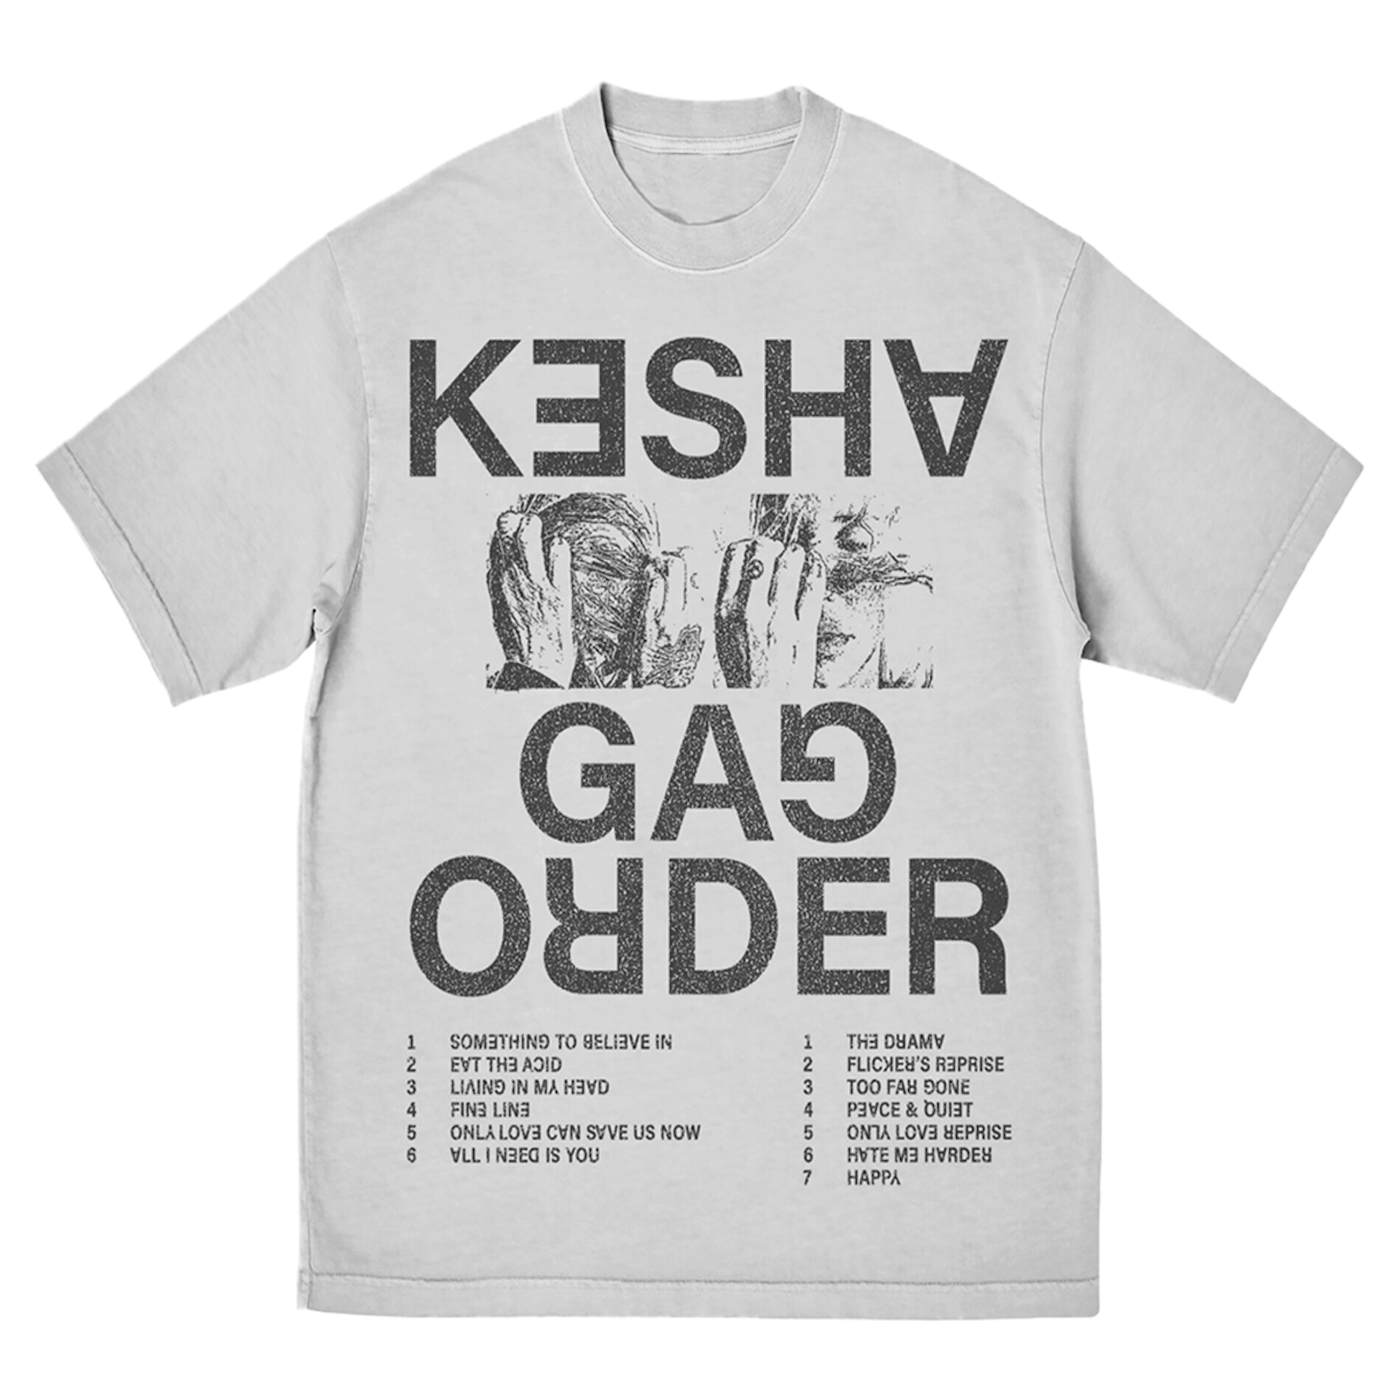 Kesha GAG ORDER TEE